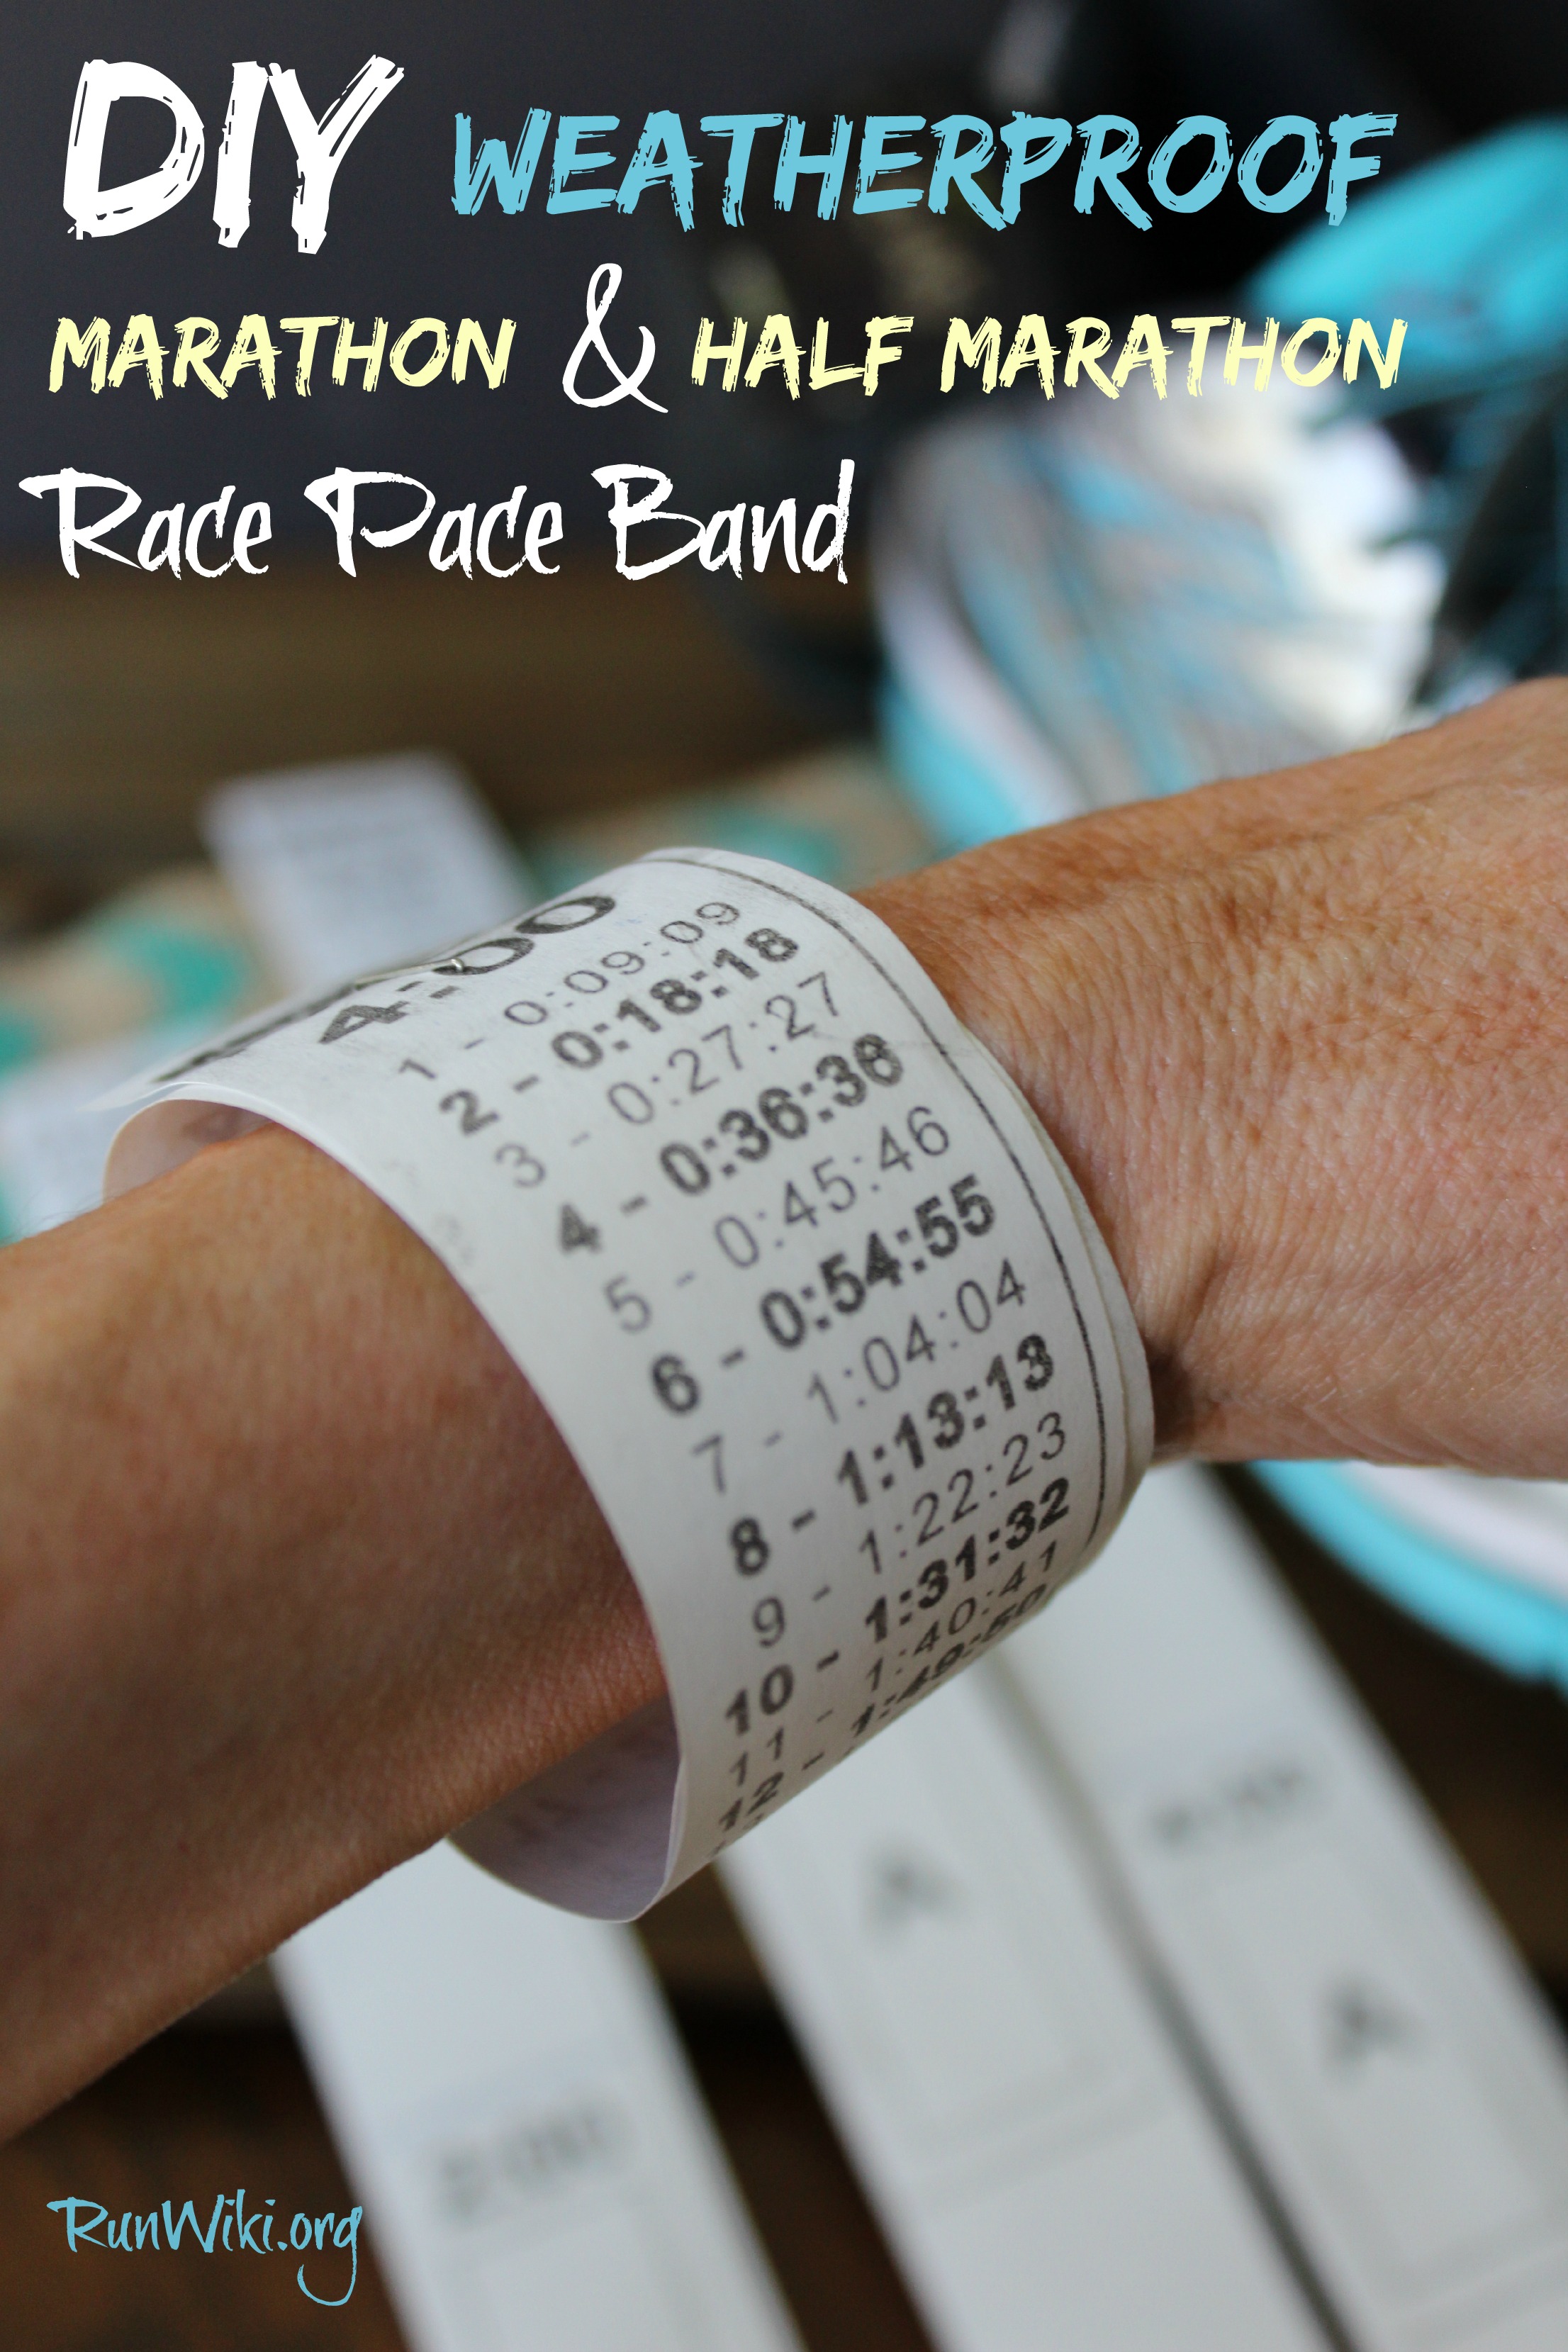 Marathon Pace Chart Bracelet